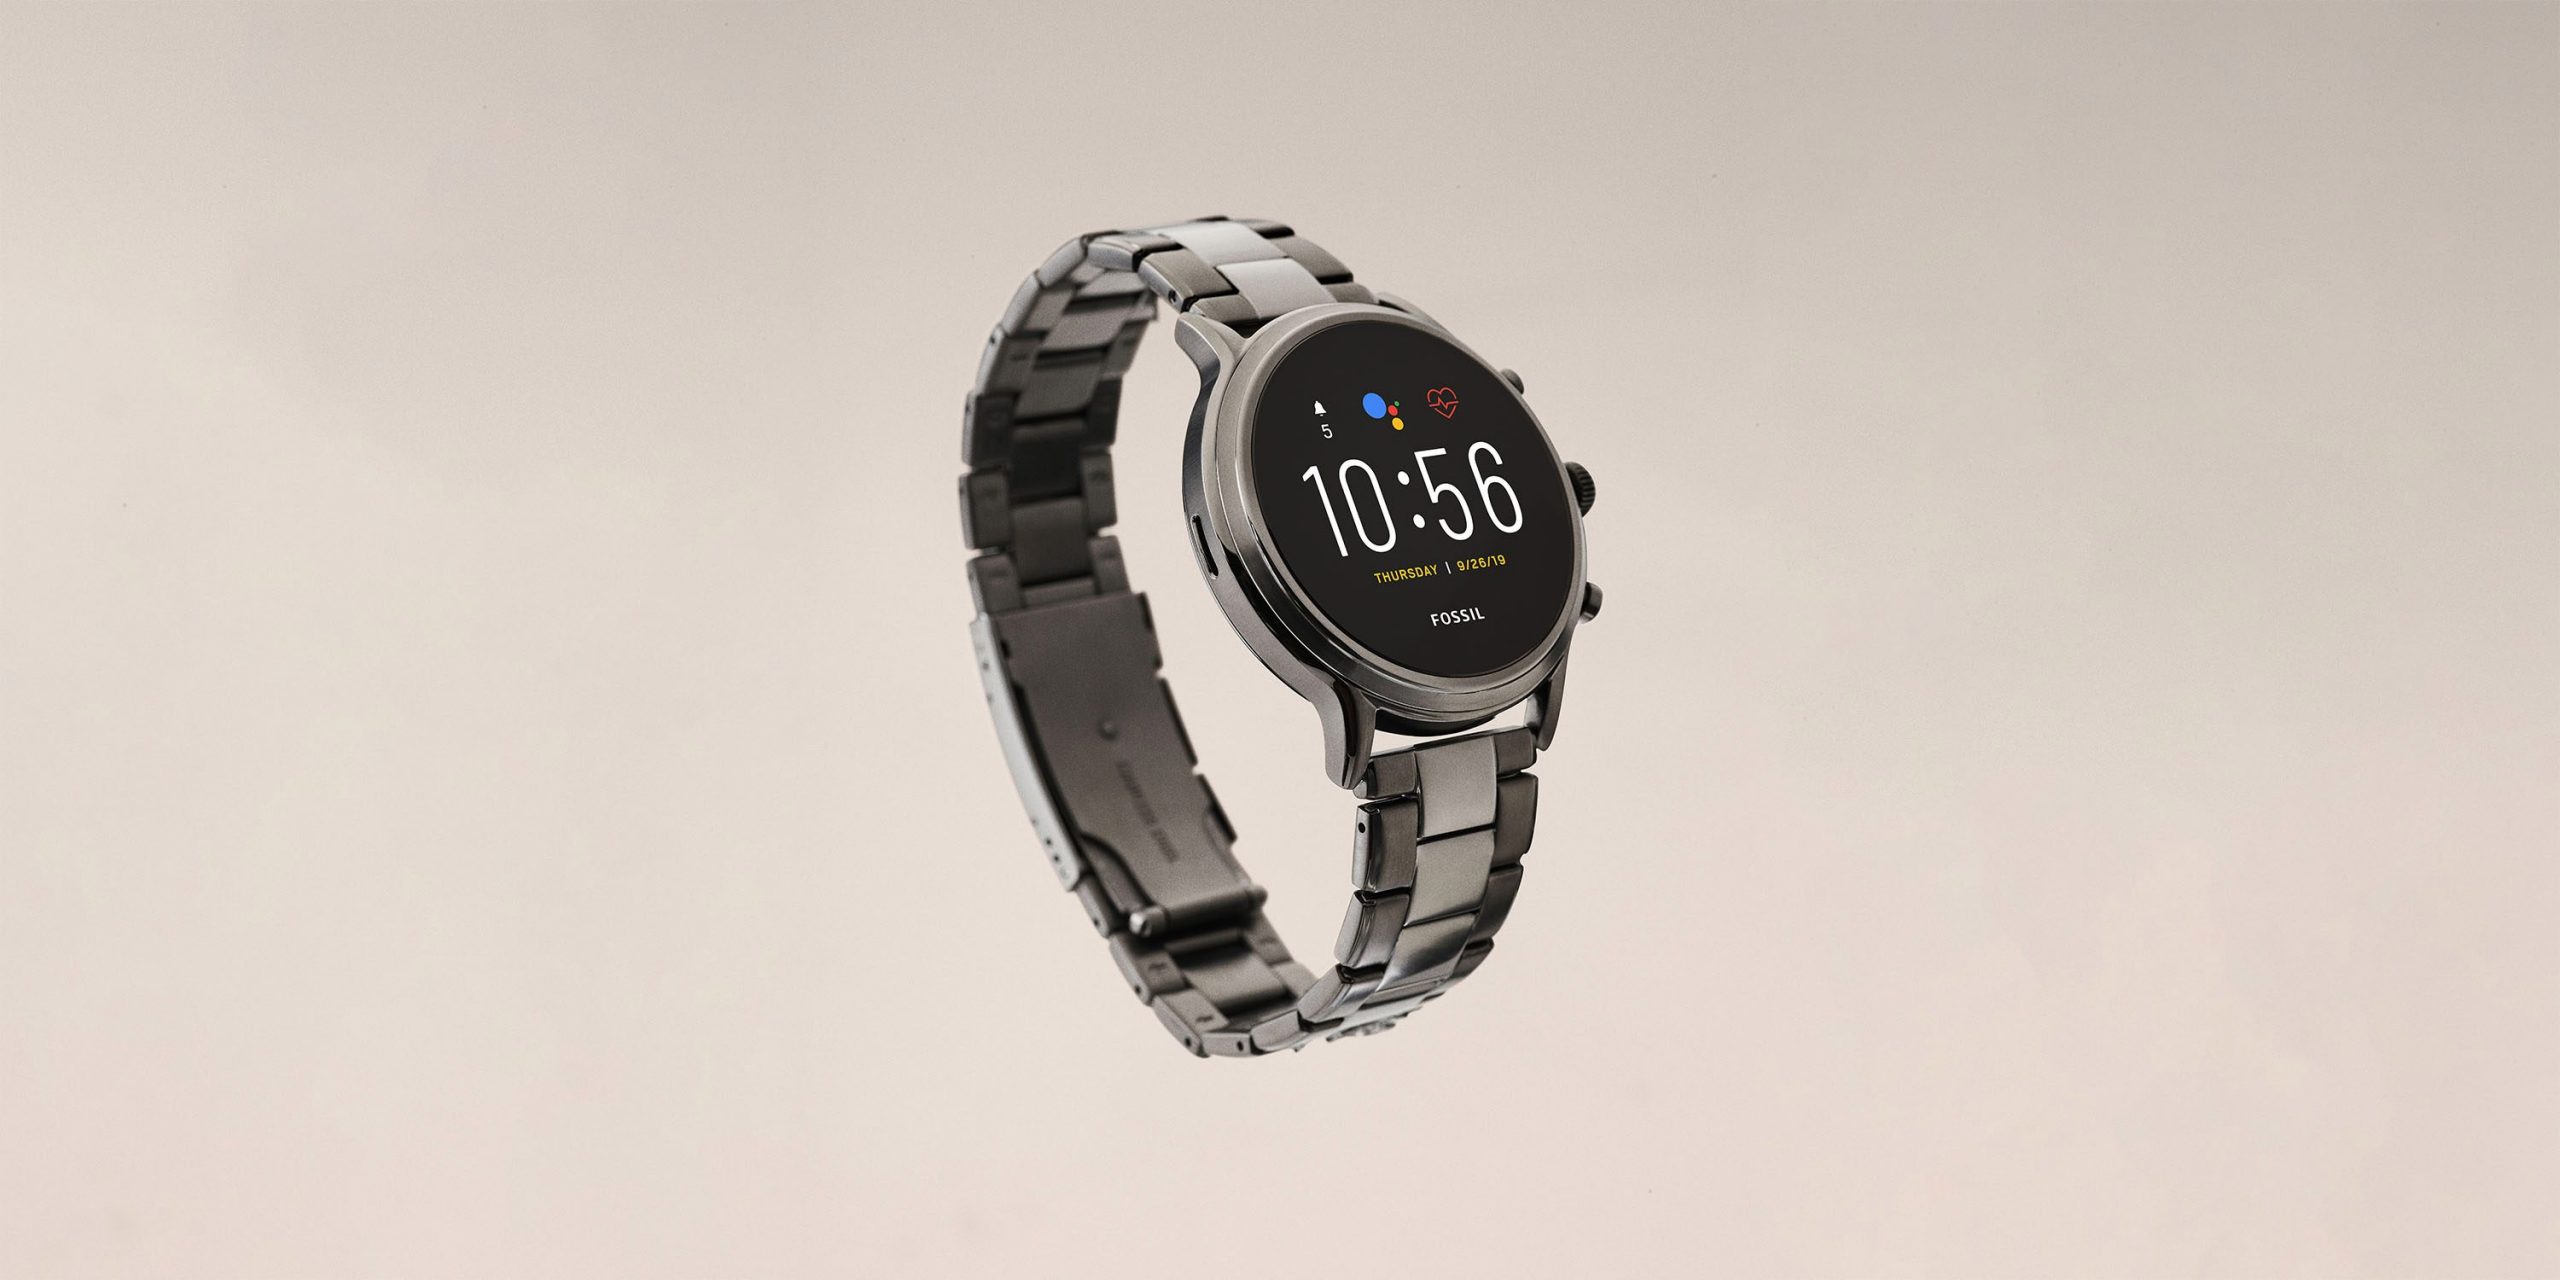 Os mais recentes relógios Wear OS da Fossil têm 1 GB de RAM, modos de bateria inteligente, Snapdragon Wear 3100